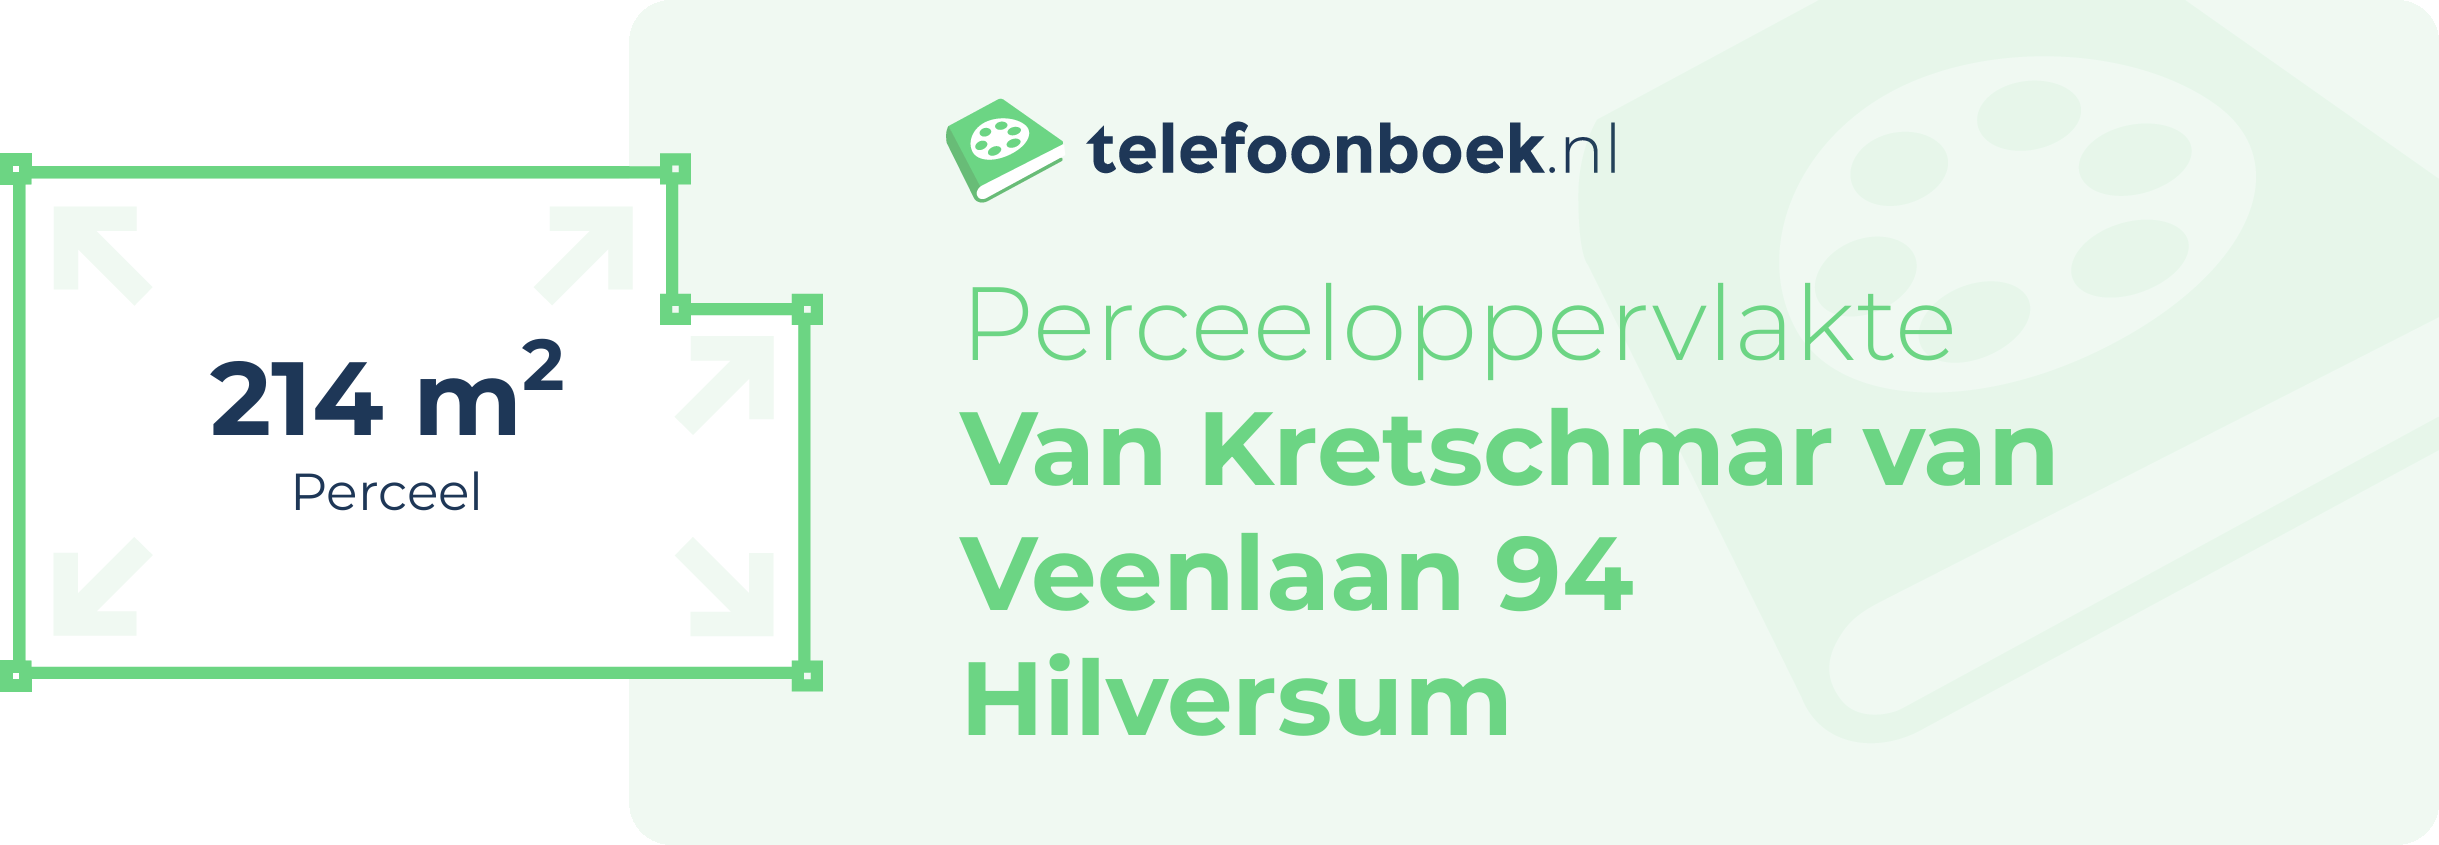 Perceeloppervlakte Van Kretschmar Van Veenlaan 94 Hilversum